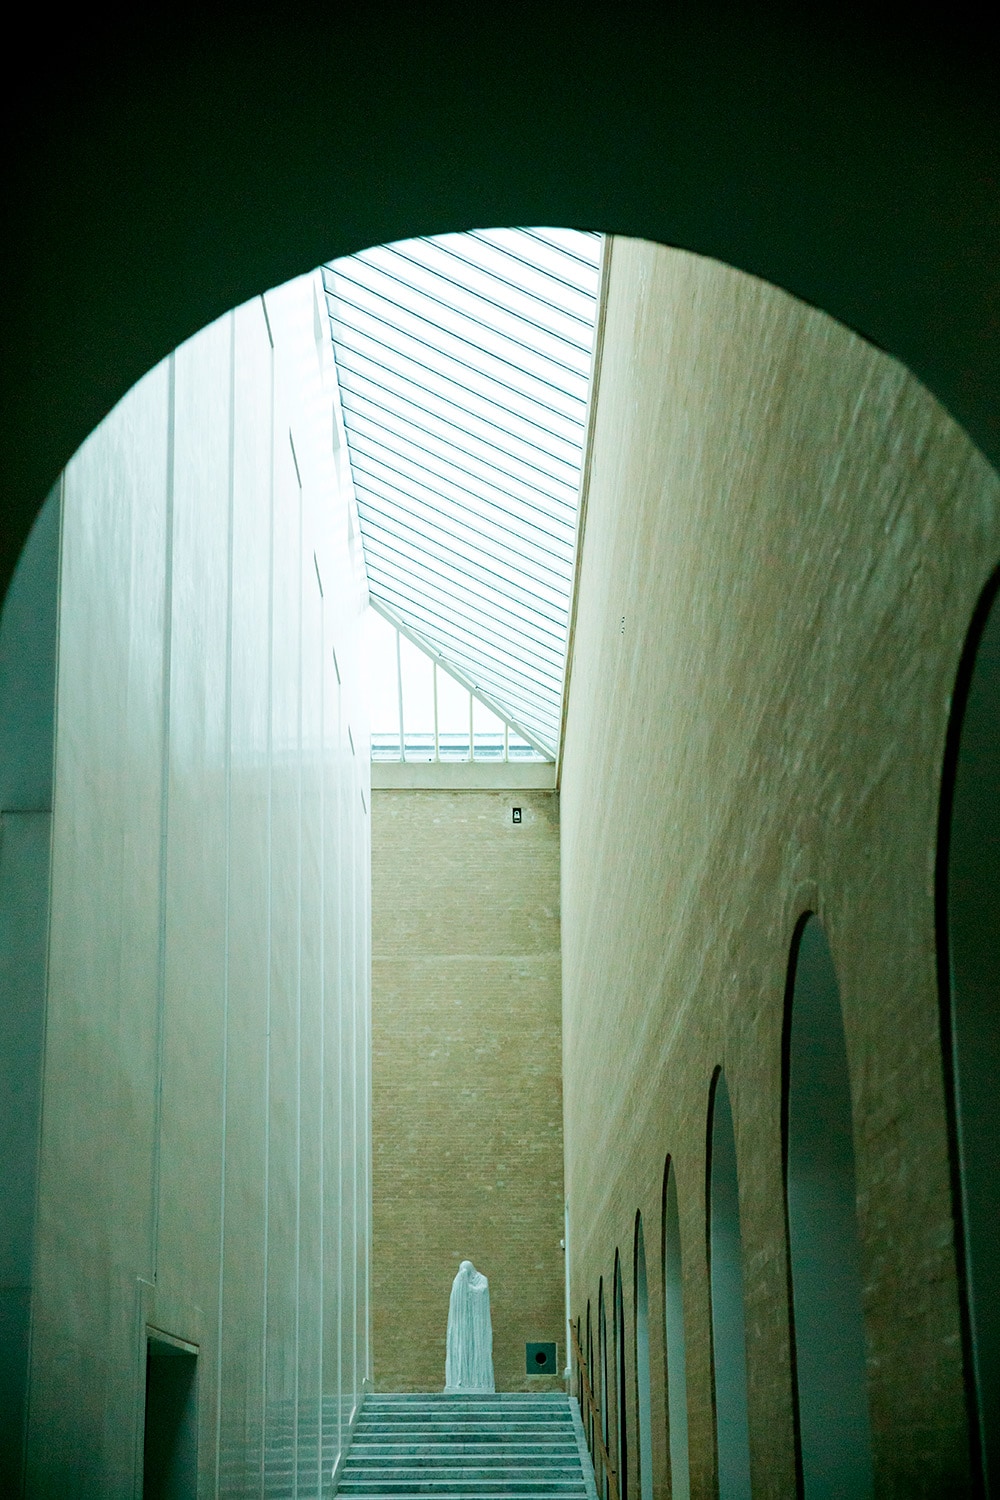 展示室に向かう階段。冬が暗いデンマークの建物らしく、天窓から自然光を取り入れる工夫がされている。